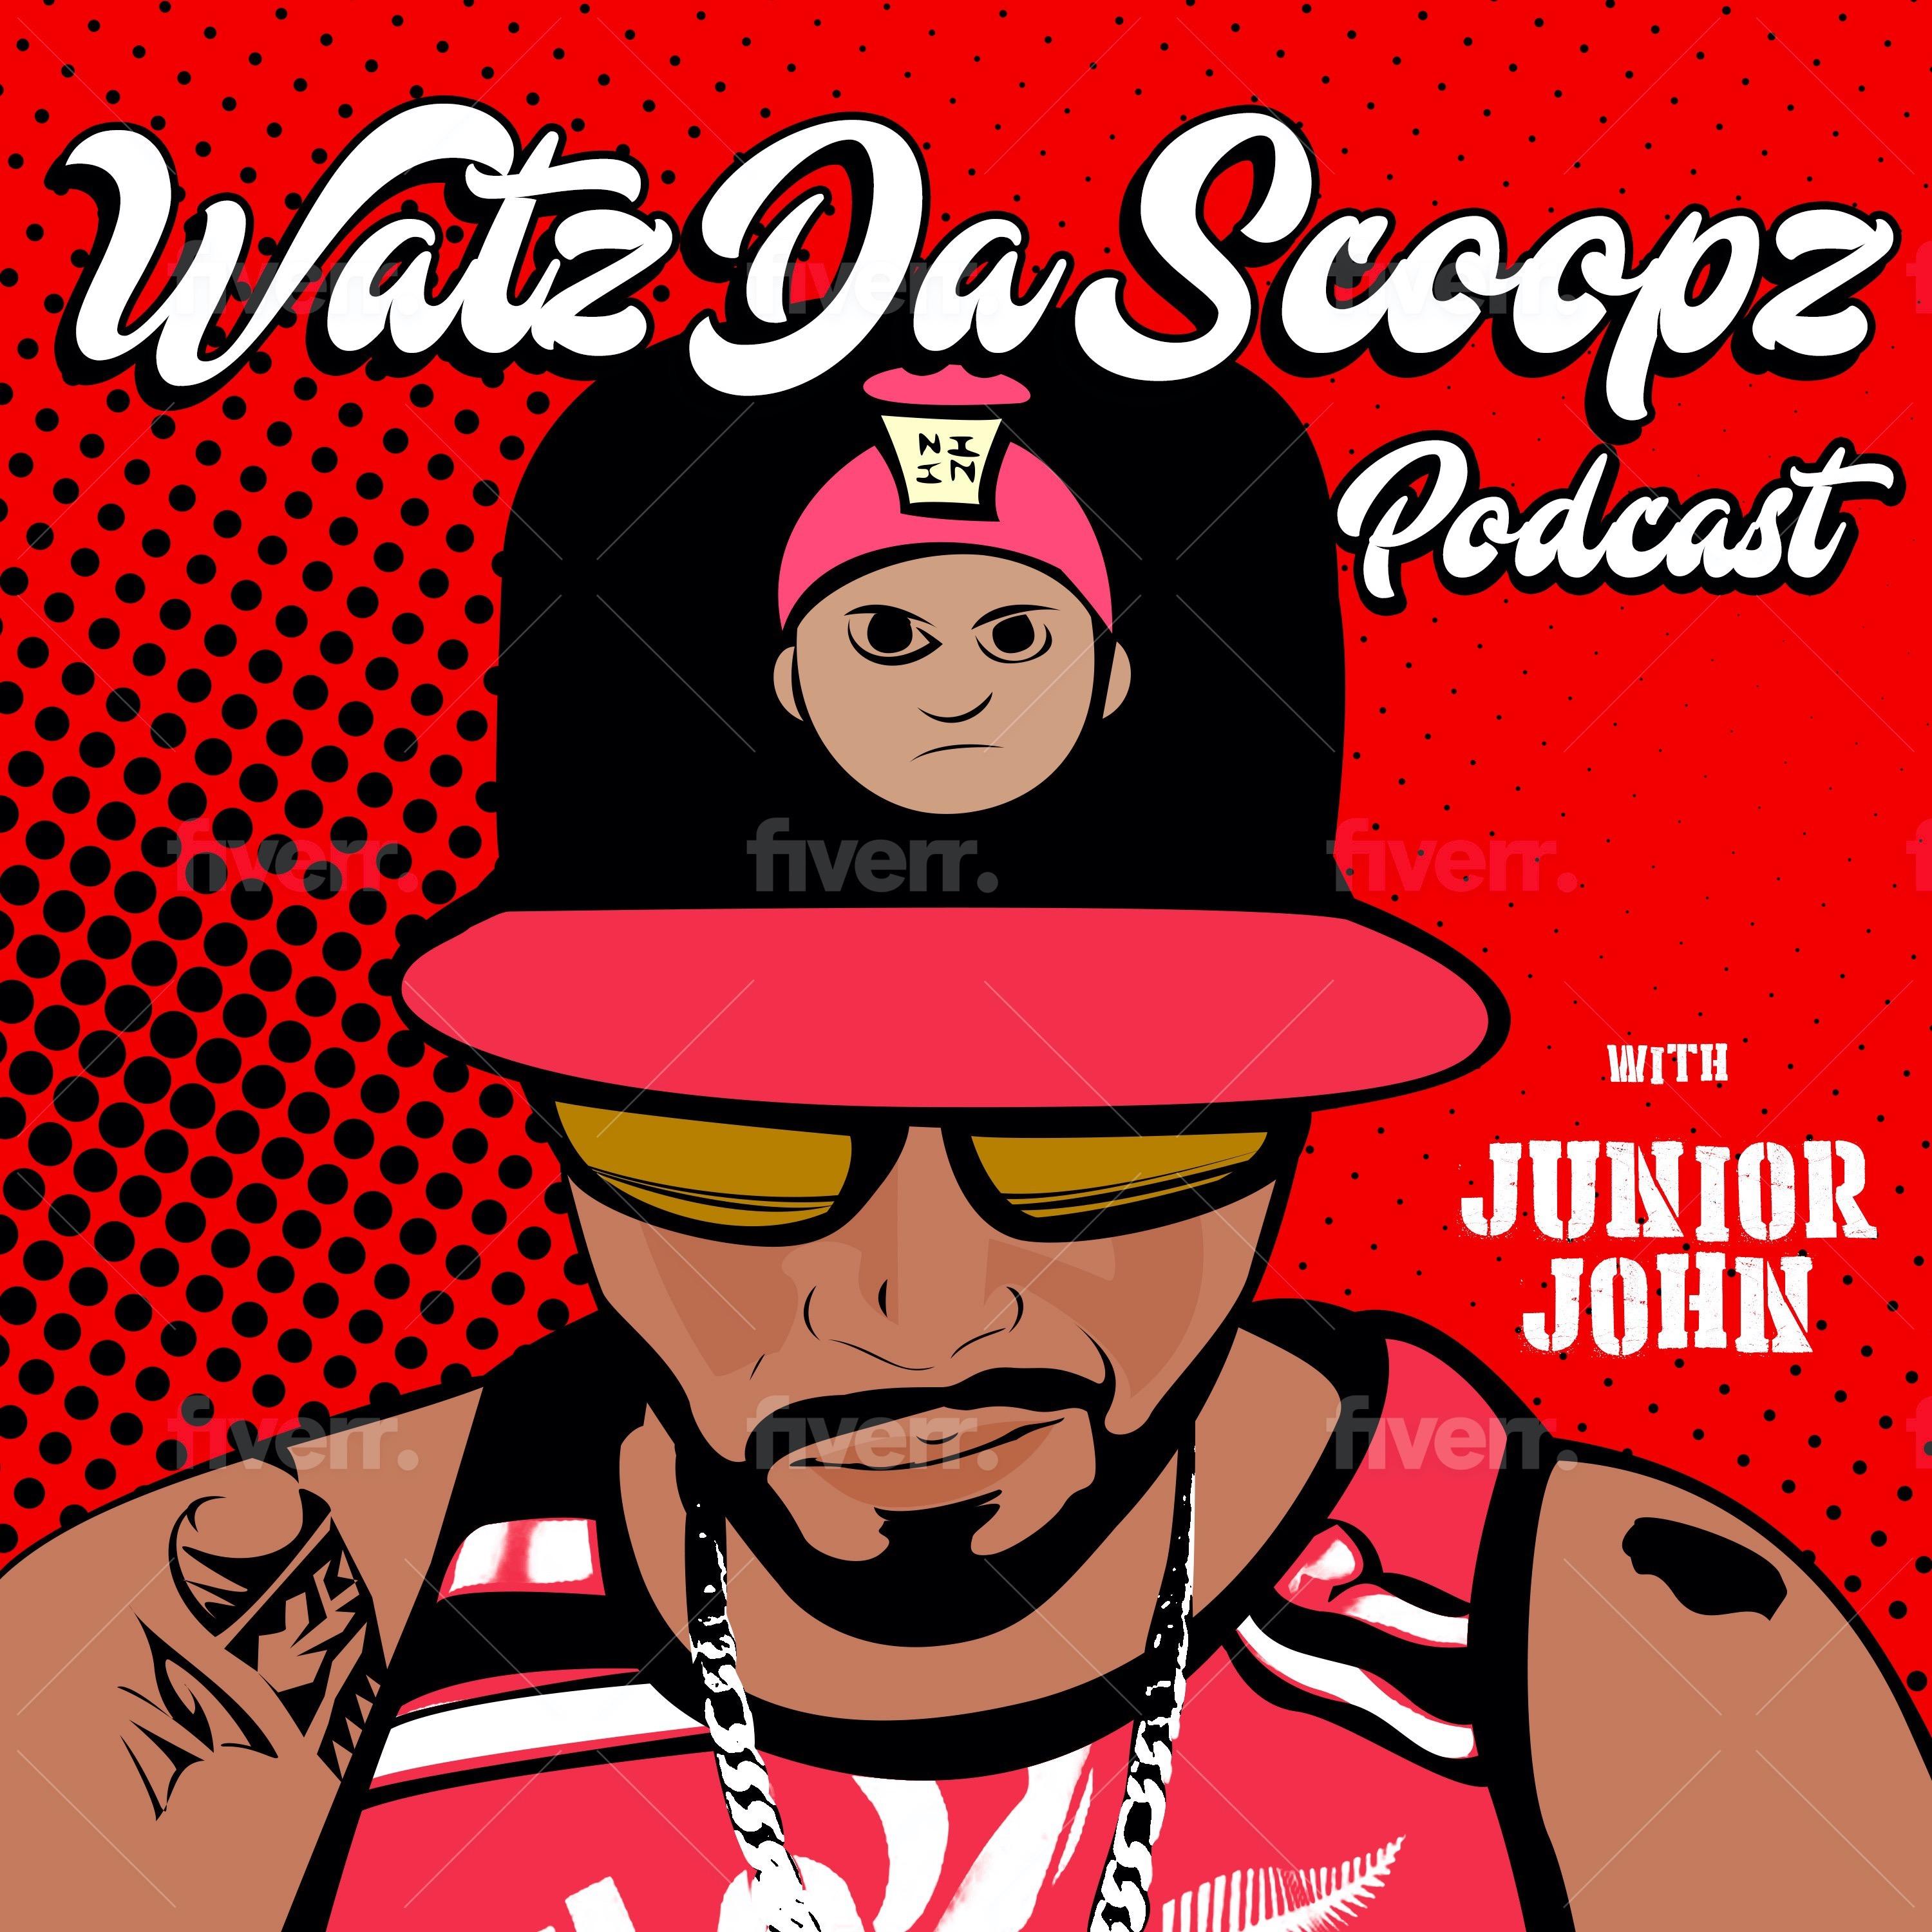 Watz Da Scoopz Podcast w/ Junior John 